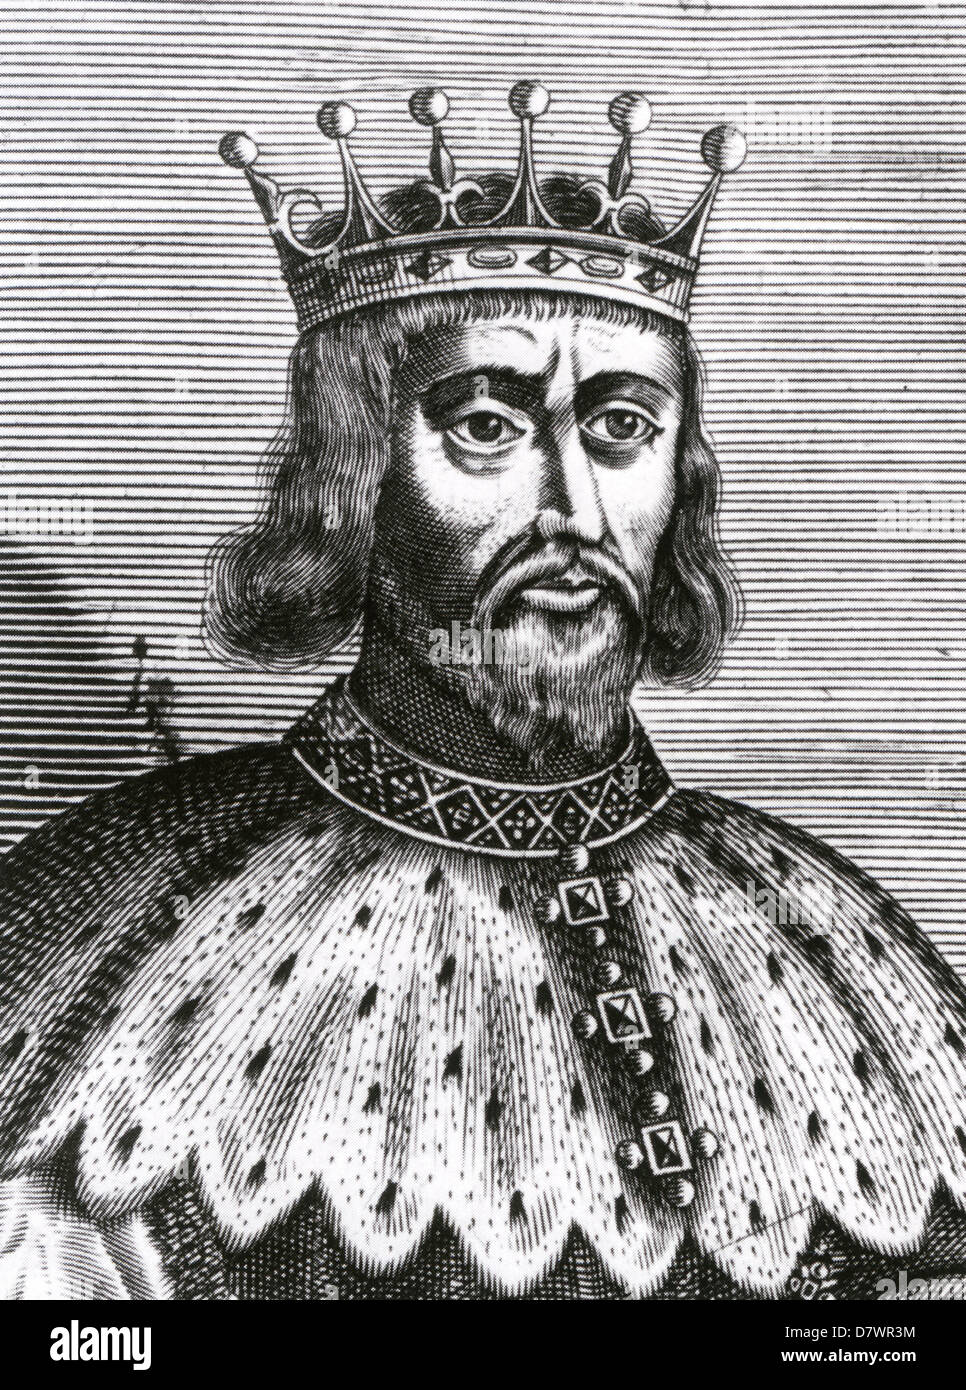 Enrico II (1133-1189) monarca inglese in una incisione del XVIII secolo Foto Stock